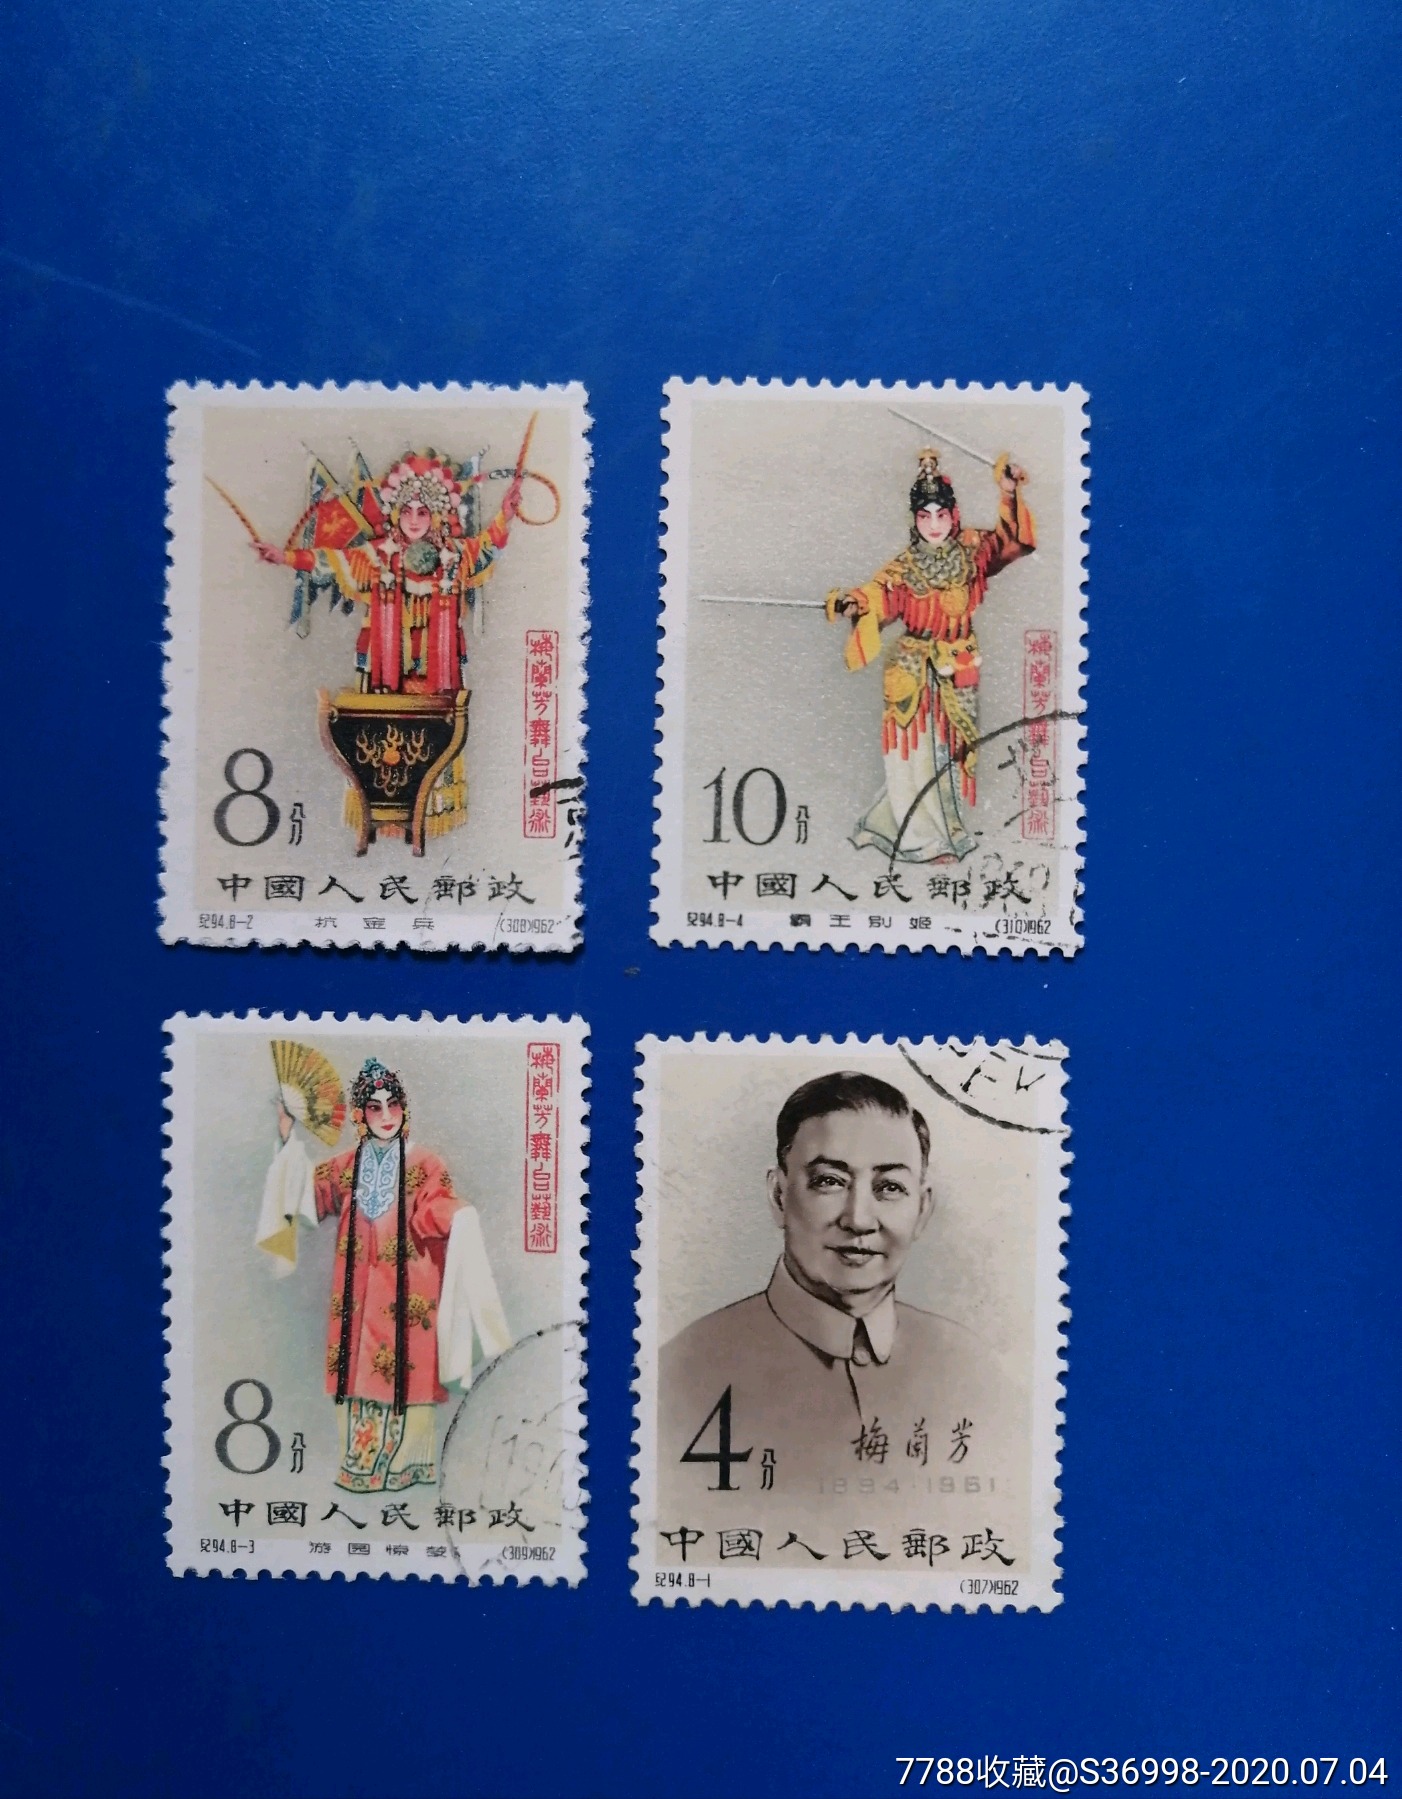 梅兰芳纪念邮票图片